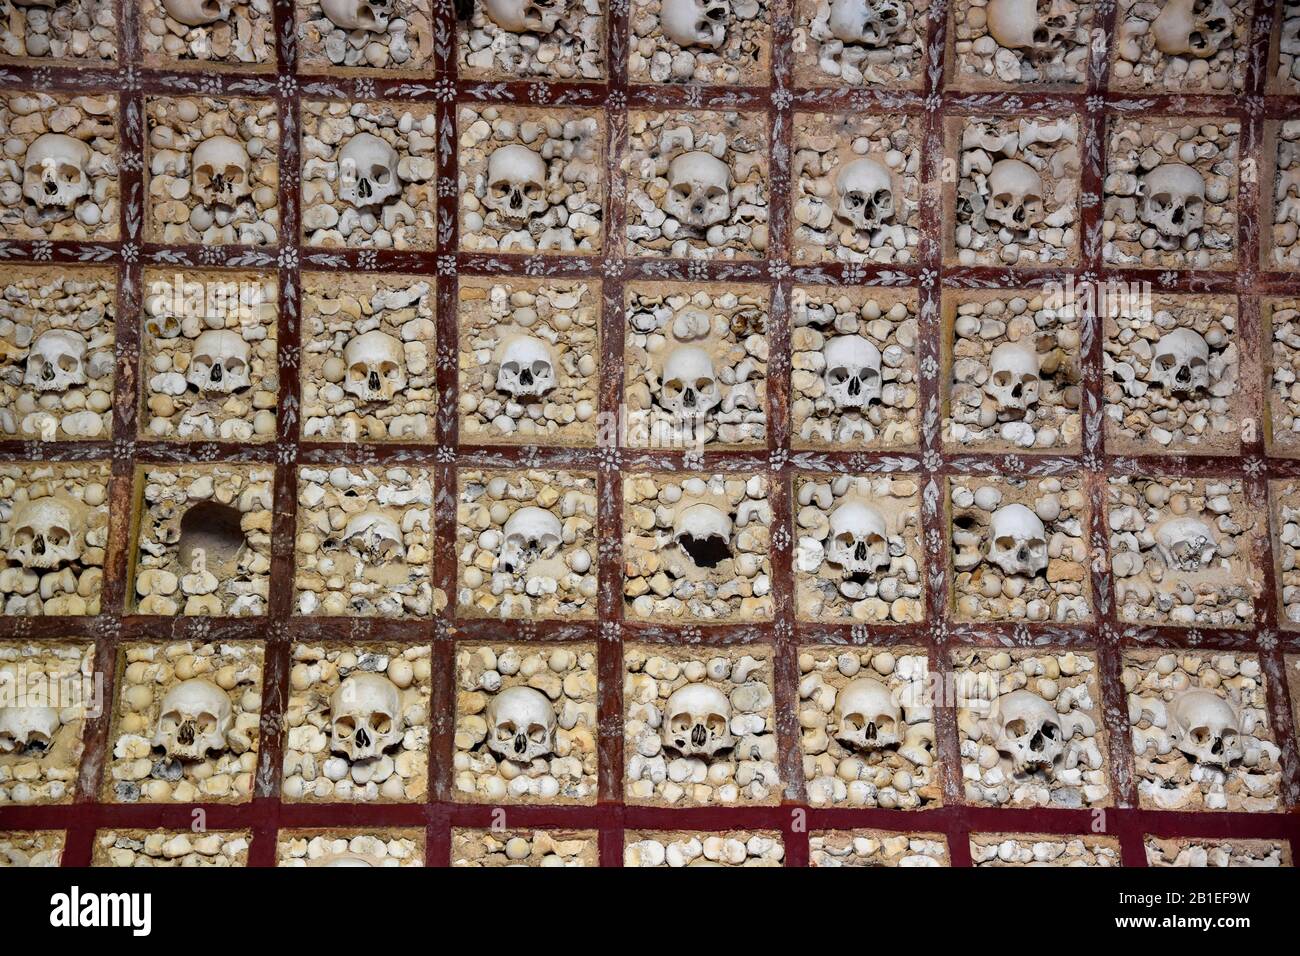 Schädel der Karmeliterkapelle, Karmelitenkirche von Faro (XVIII): Wände und Decken vollständig mit Schädel und Knochen (Femuren) menschlich gebaut, etwa 1200 SK Stockfoto